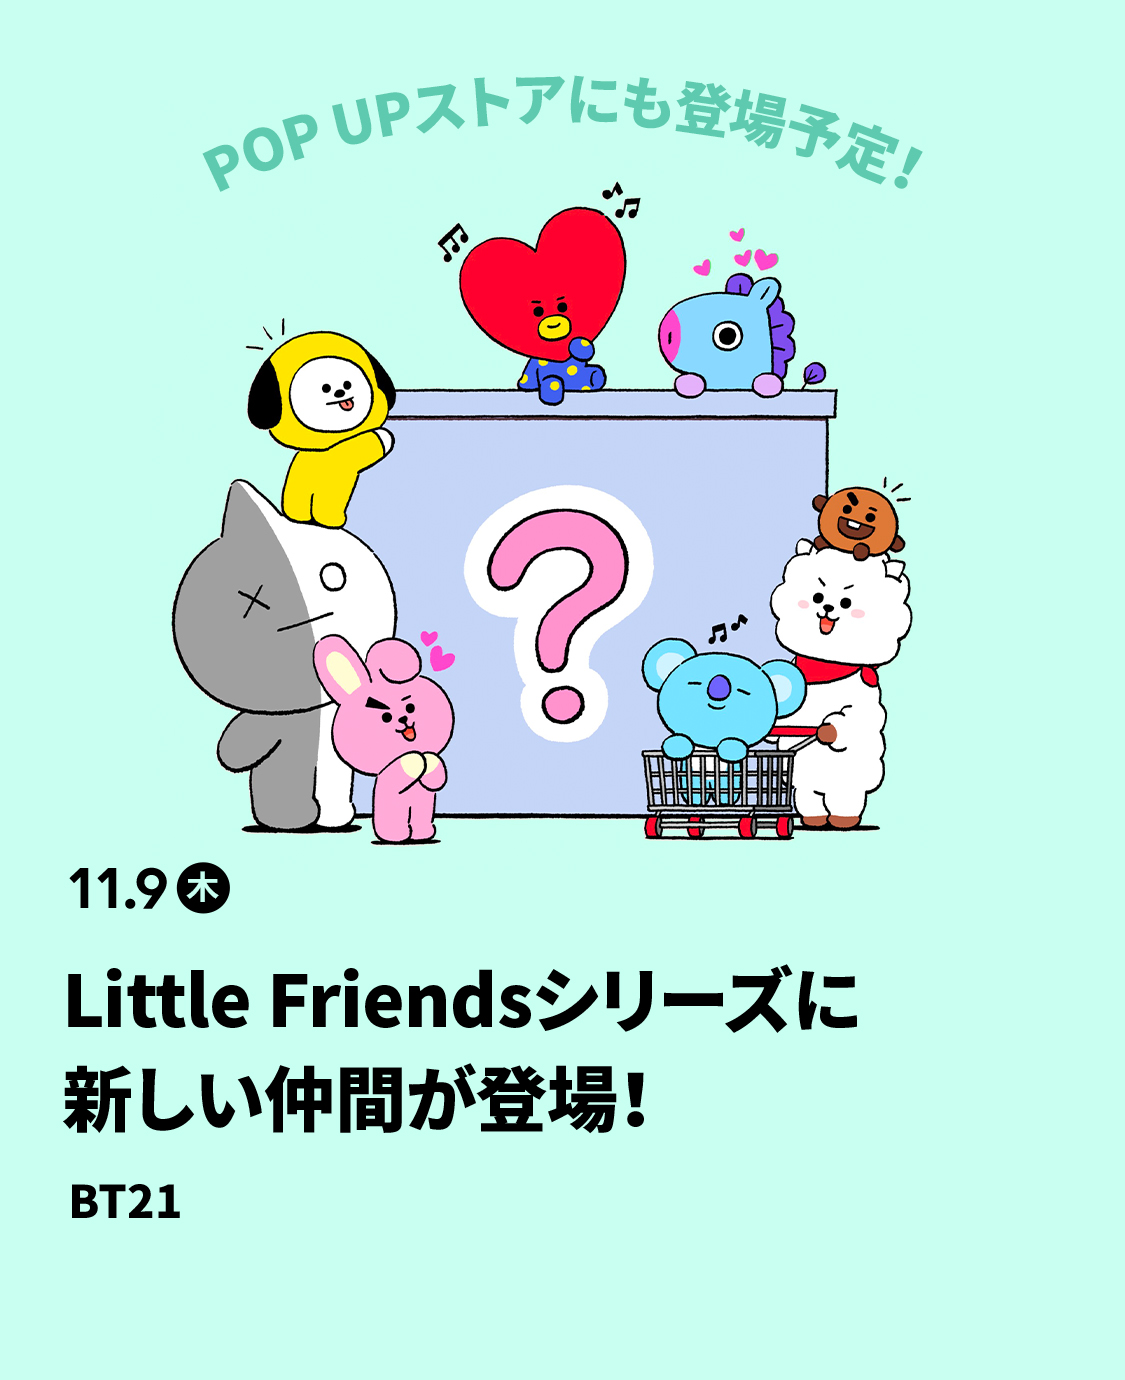 BT21 - Little Friends シュキ マスコットの+mbs.green